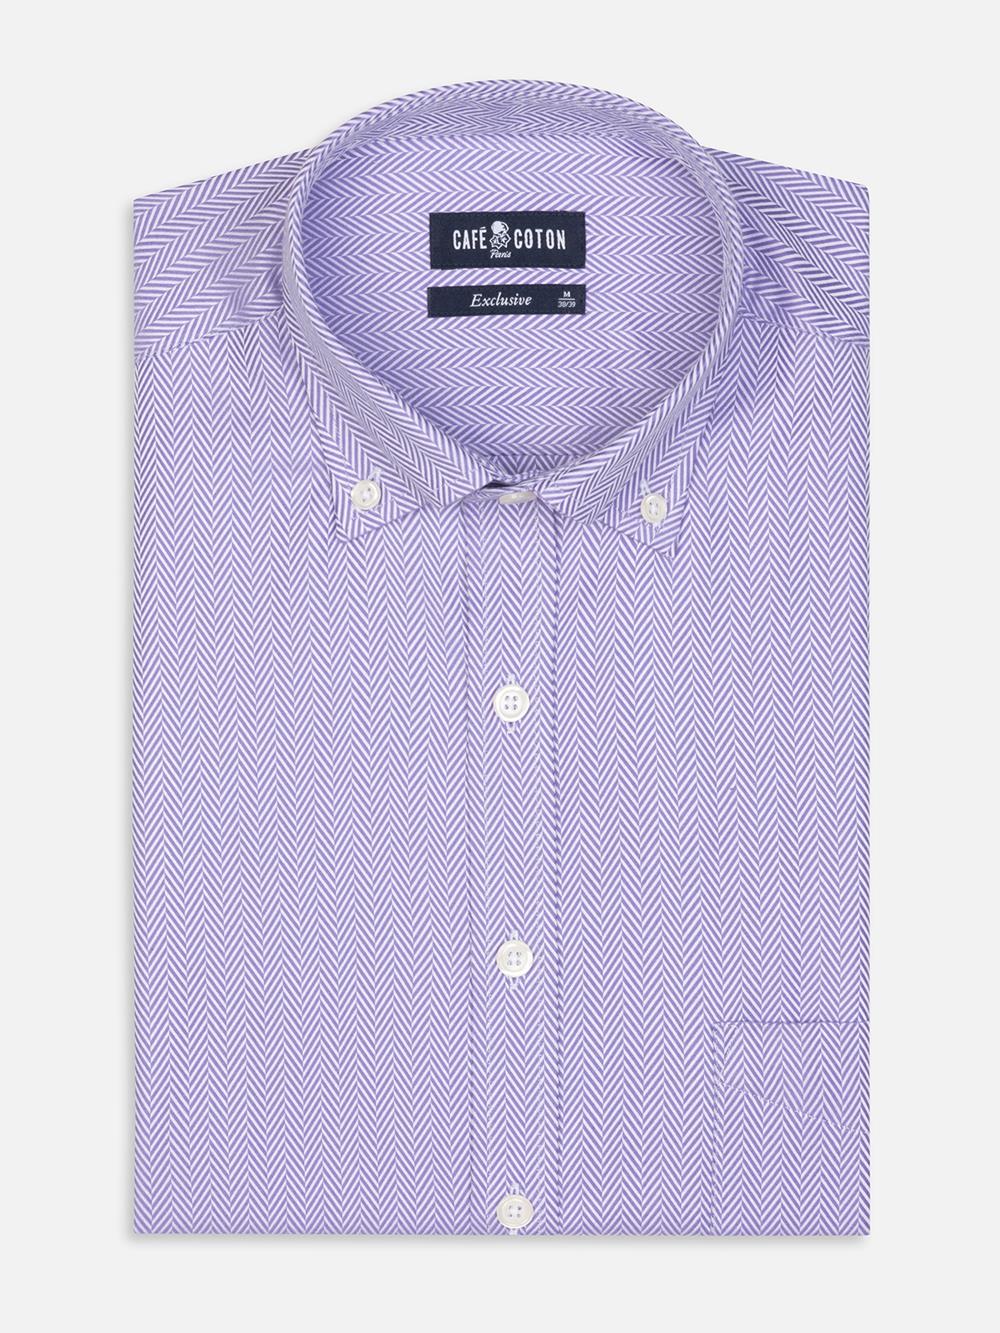 Parma Herringbone Shirt - Button down collar